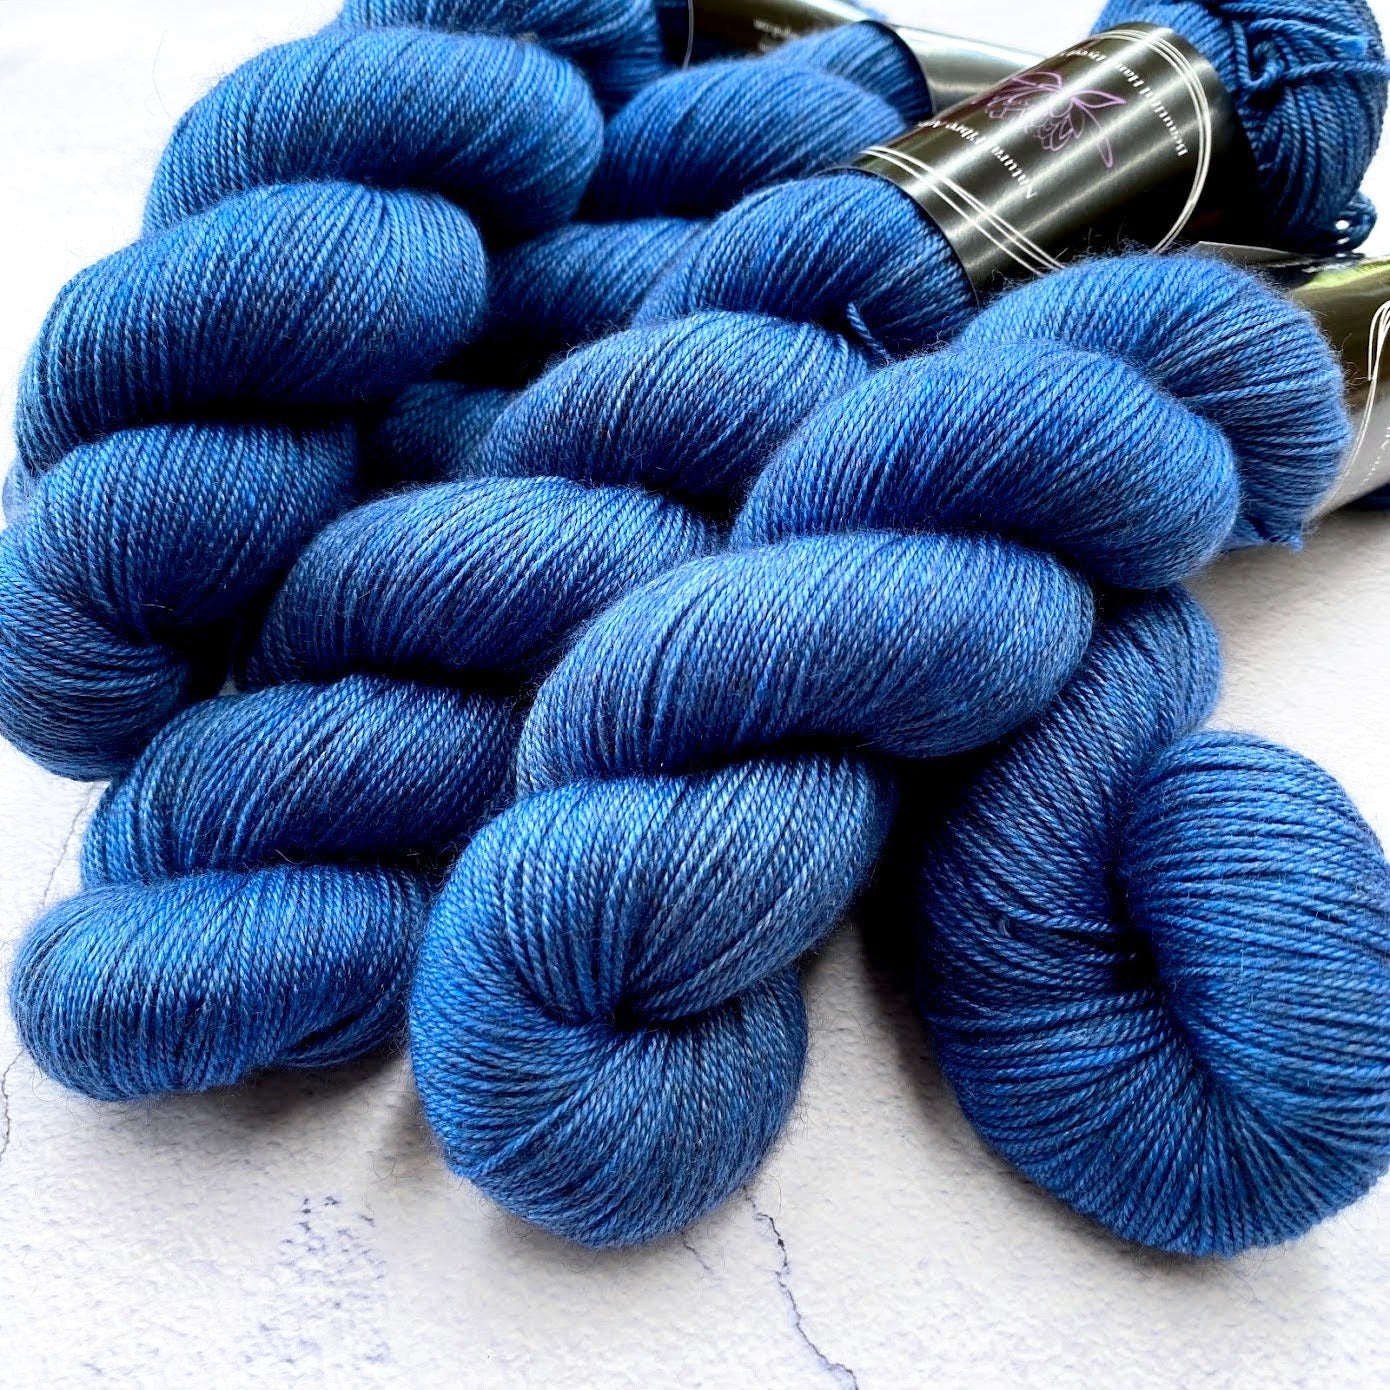 Hand dyed yarn. Bright blue, semi solid, hand dyed yarn on Merino Silk Yak fingering weight 4 ply yarn.